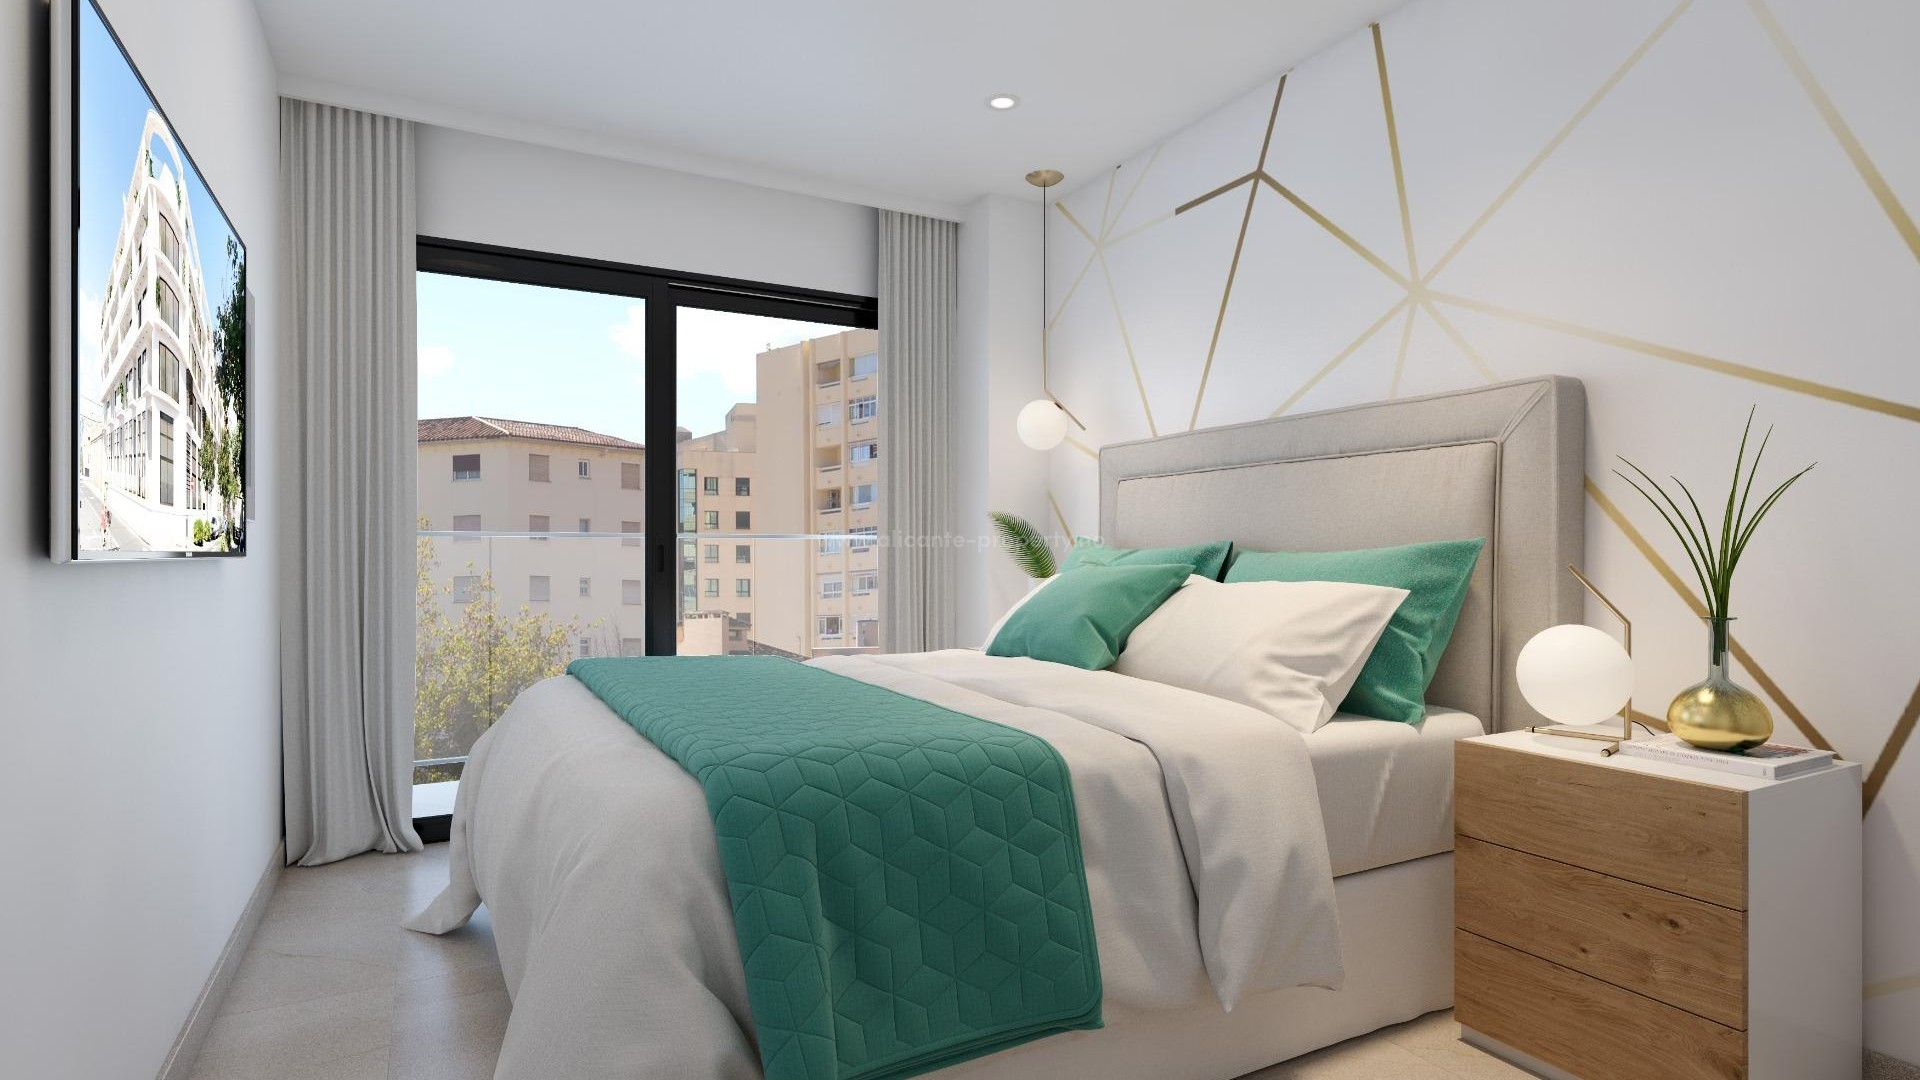 61 leiligheter og toppleiligheter i Alicante by, 2/3/4 soverom,  2 bad, felles takterrasse med svømmebassenger for voksne og barn, grønne områder